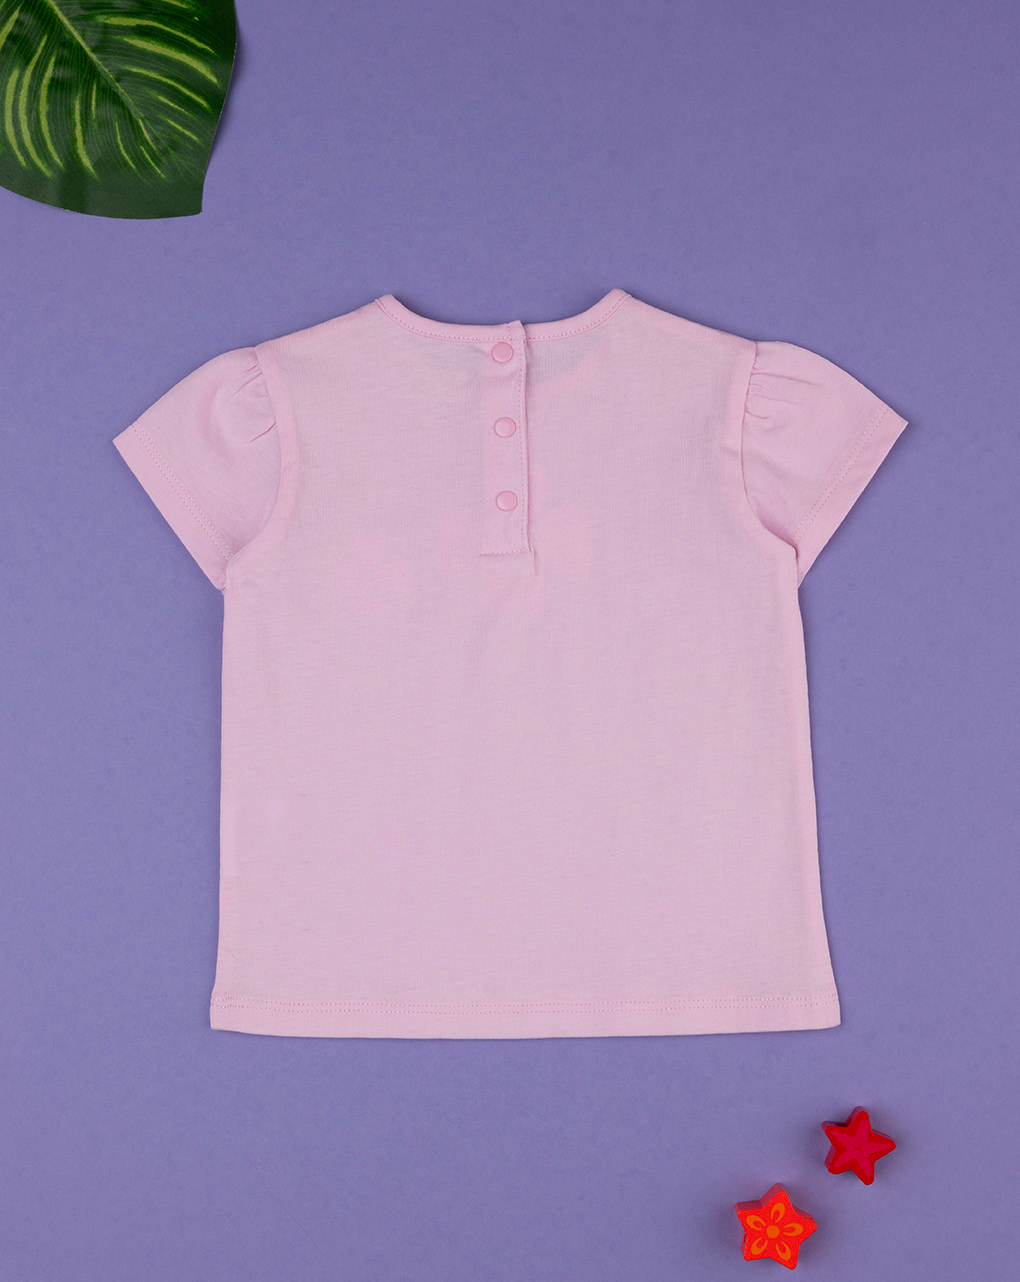 βρεφικό t-shirt ροζ με καρδούλες για κορίτσι - Prénatal